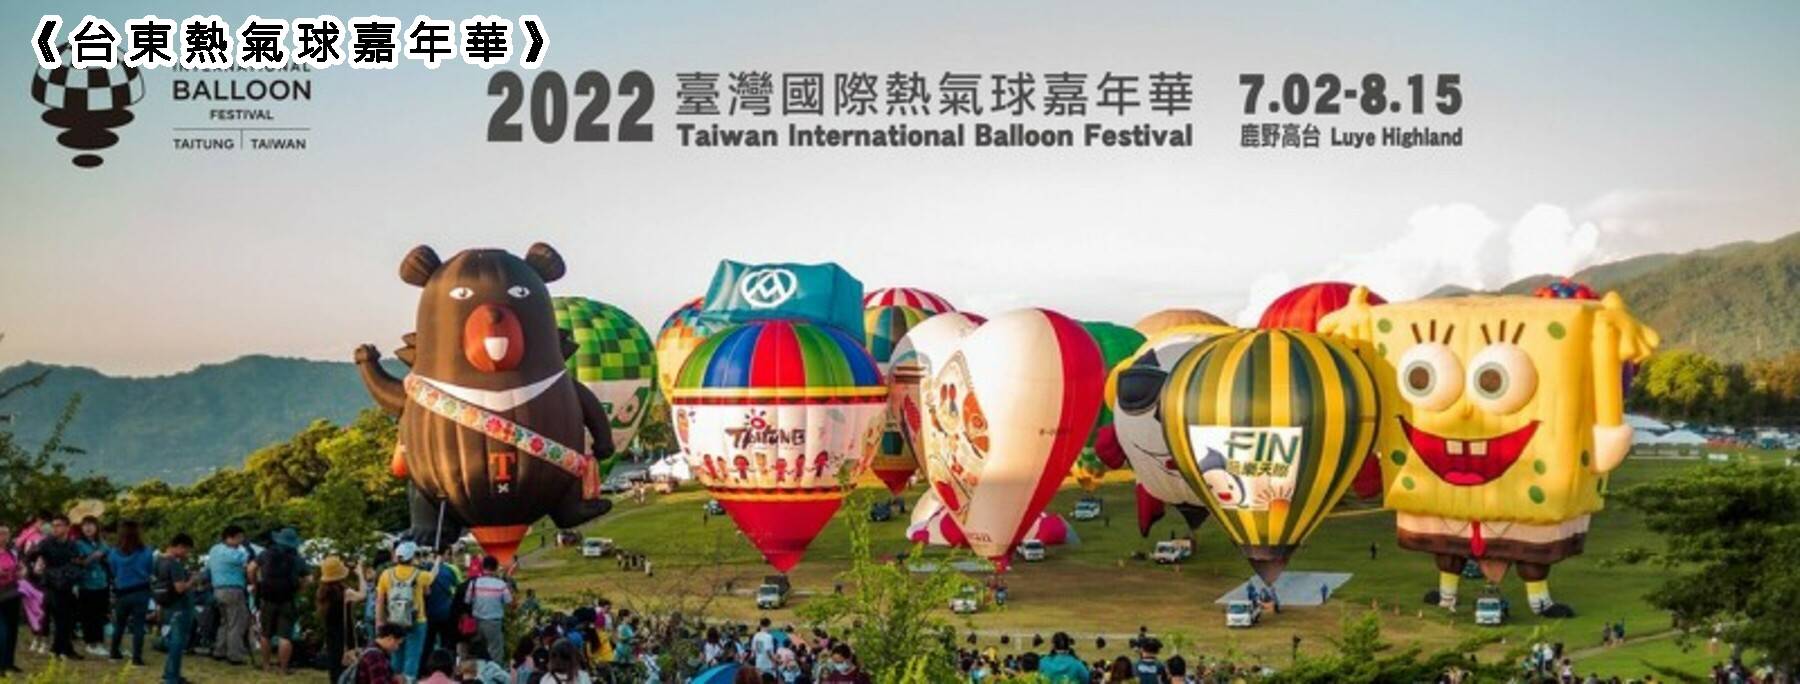 大加碼旅遊補助GO-熱氣球嘉年華．台東美拍二日遊10